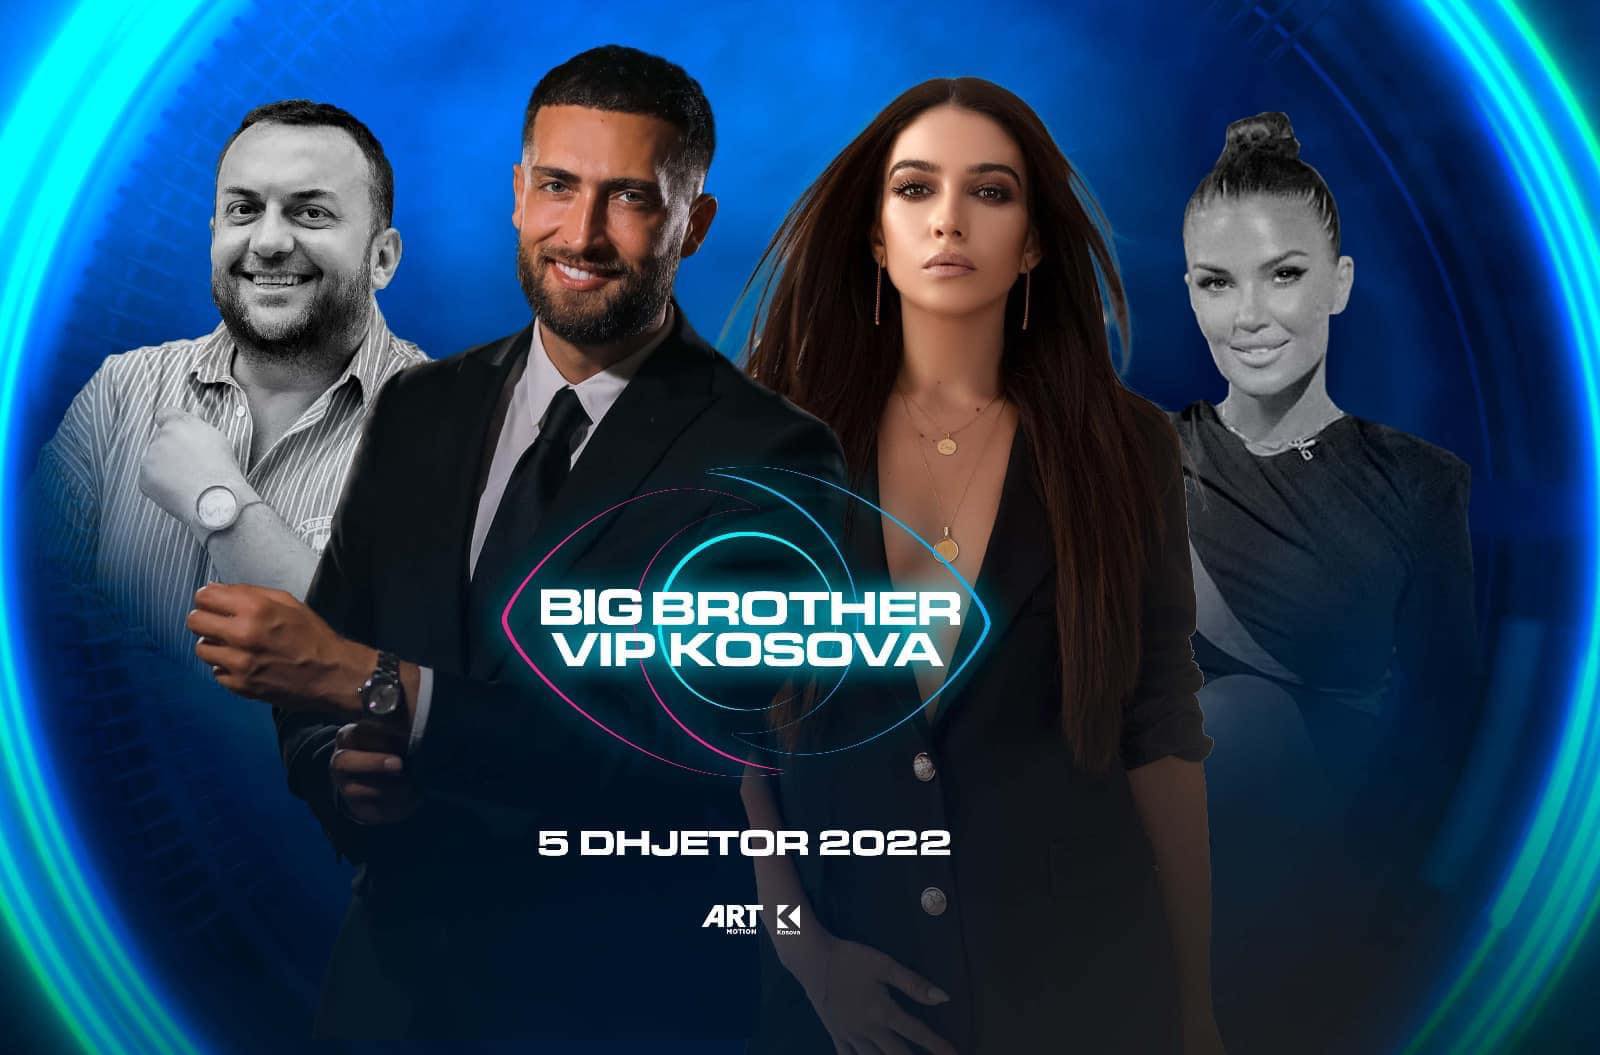 Përfundon nata e parë Prime e spektaklit Big Brother VIP Kosova Klan